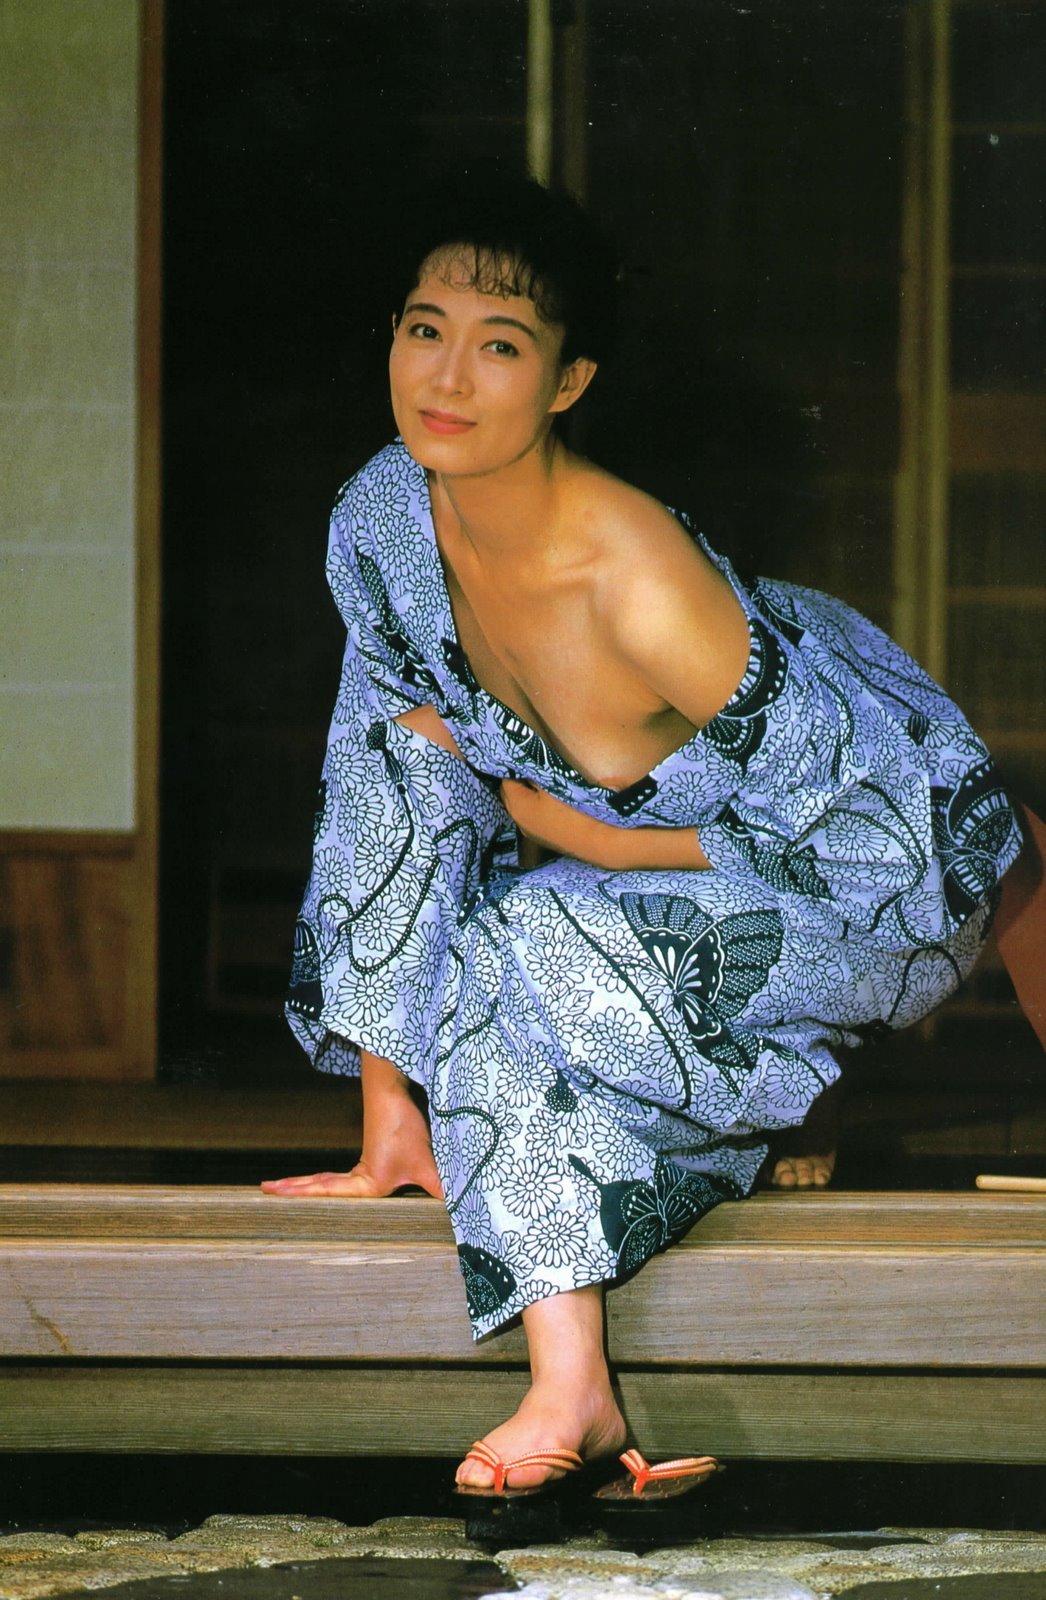 Yoko shimada biography